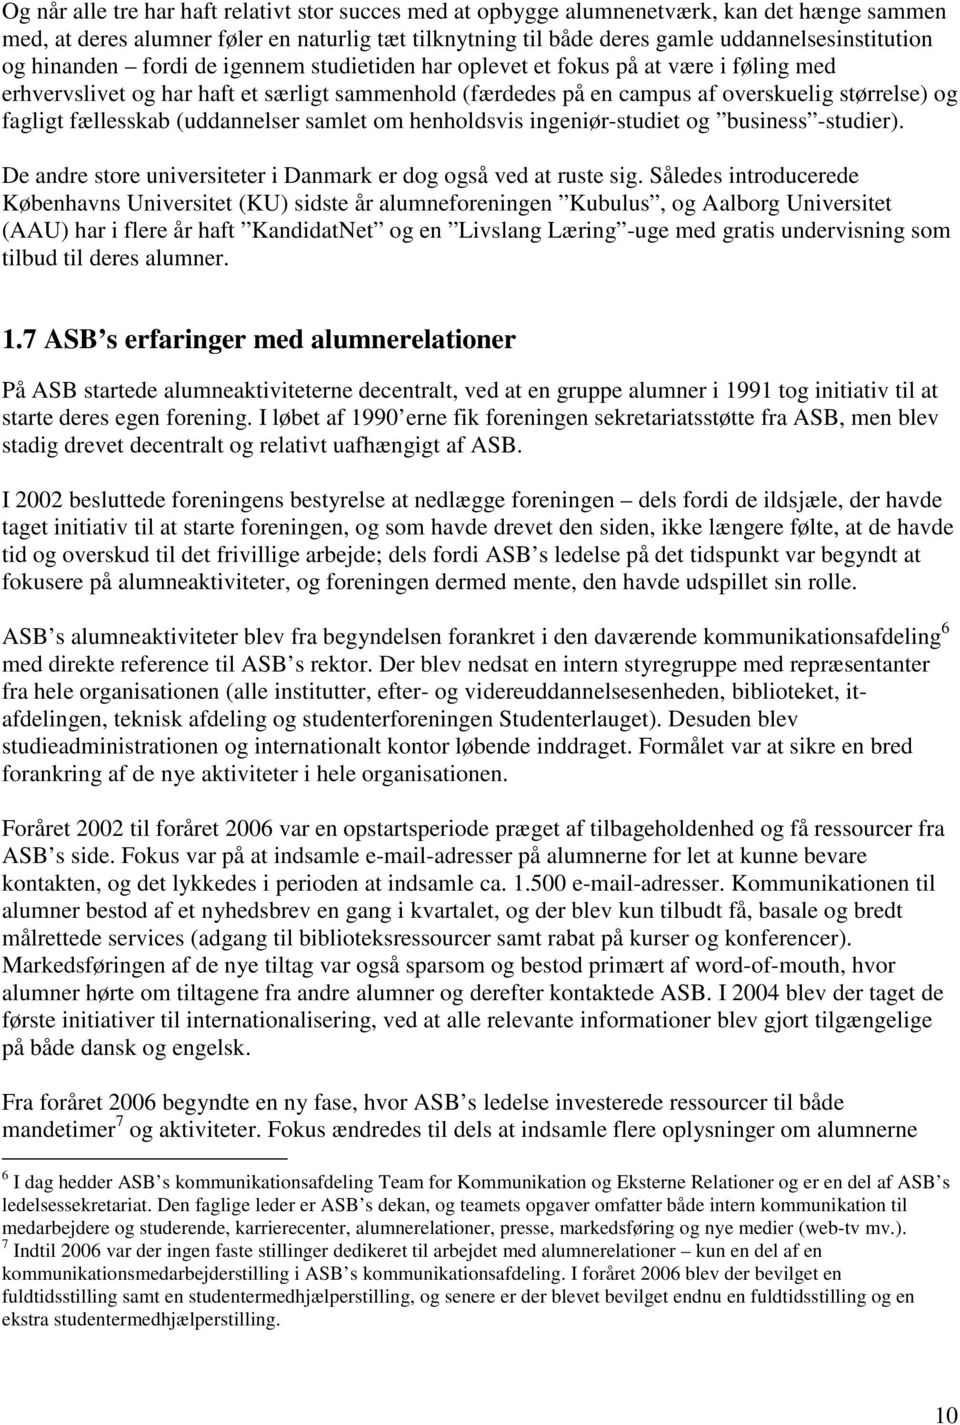 Aarhus Universitets alumnerelationer. - en analyse af den aktuelle situation og anbefalinger til fremtidige indsats - PDF Free Download